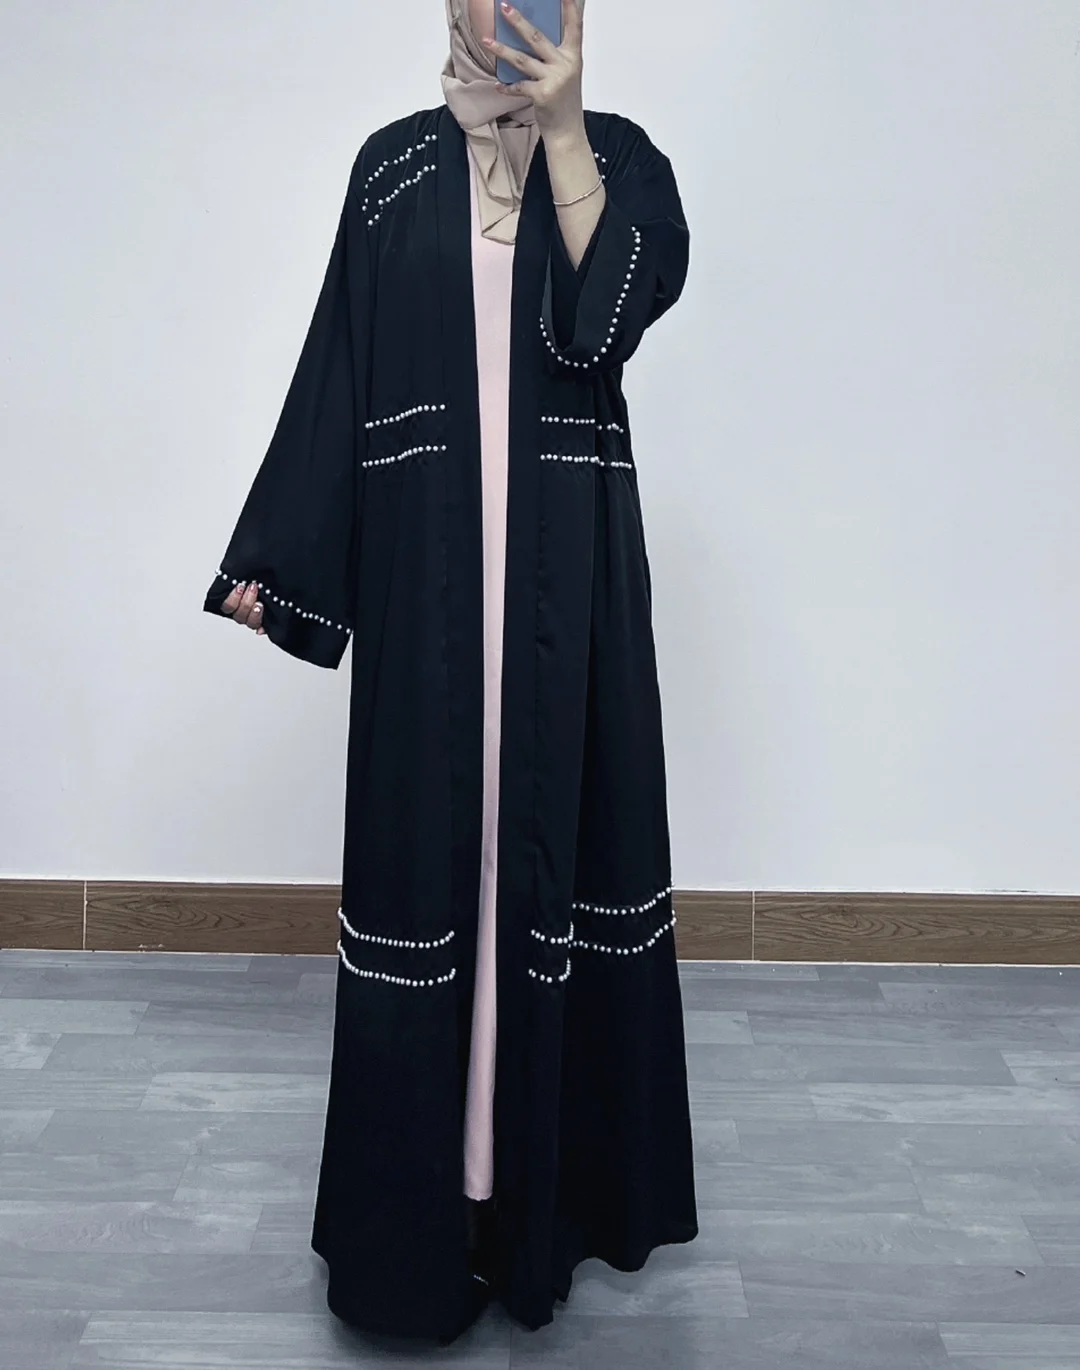 

Latest Muslim Abayas For Women Islamic Fashion Pearls Kimono Robe Modest Dress Long Elegant Cardigans Clothing Front Open Abaya